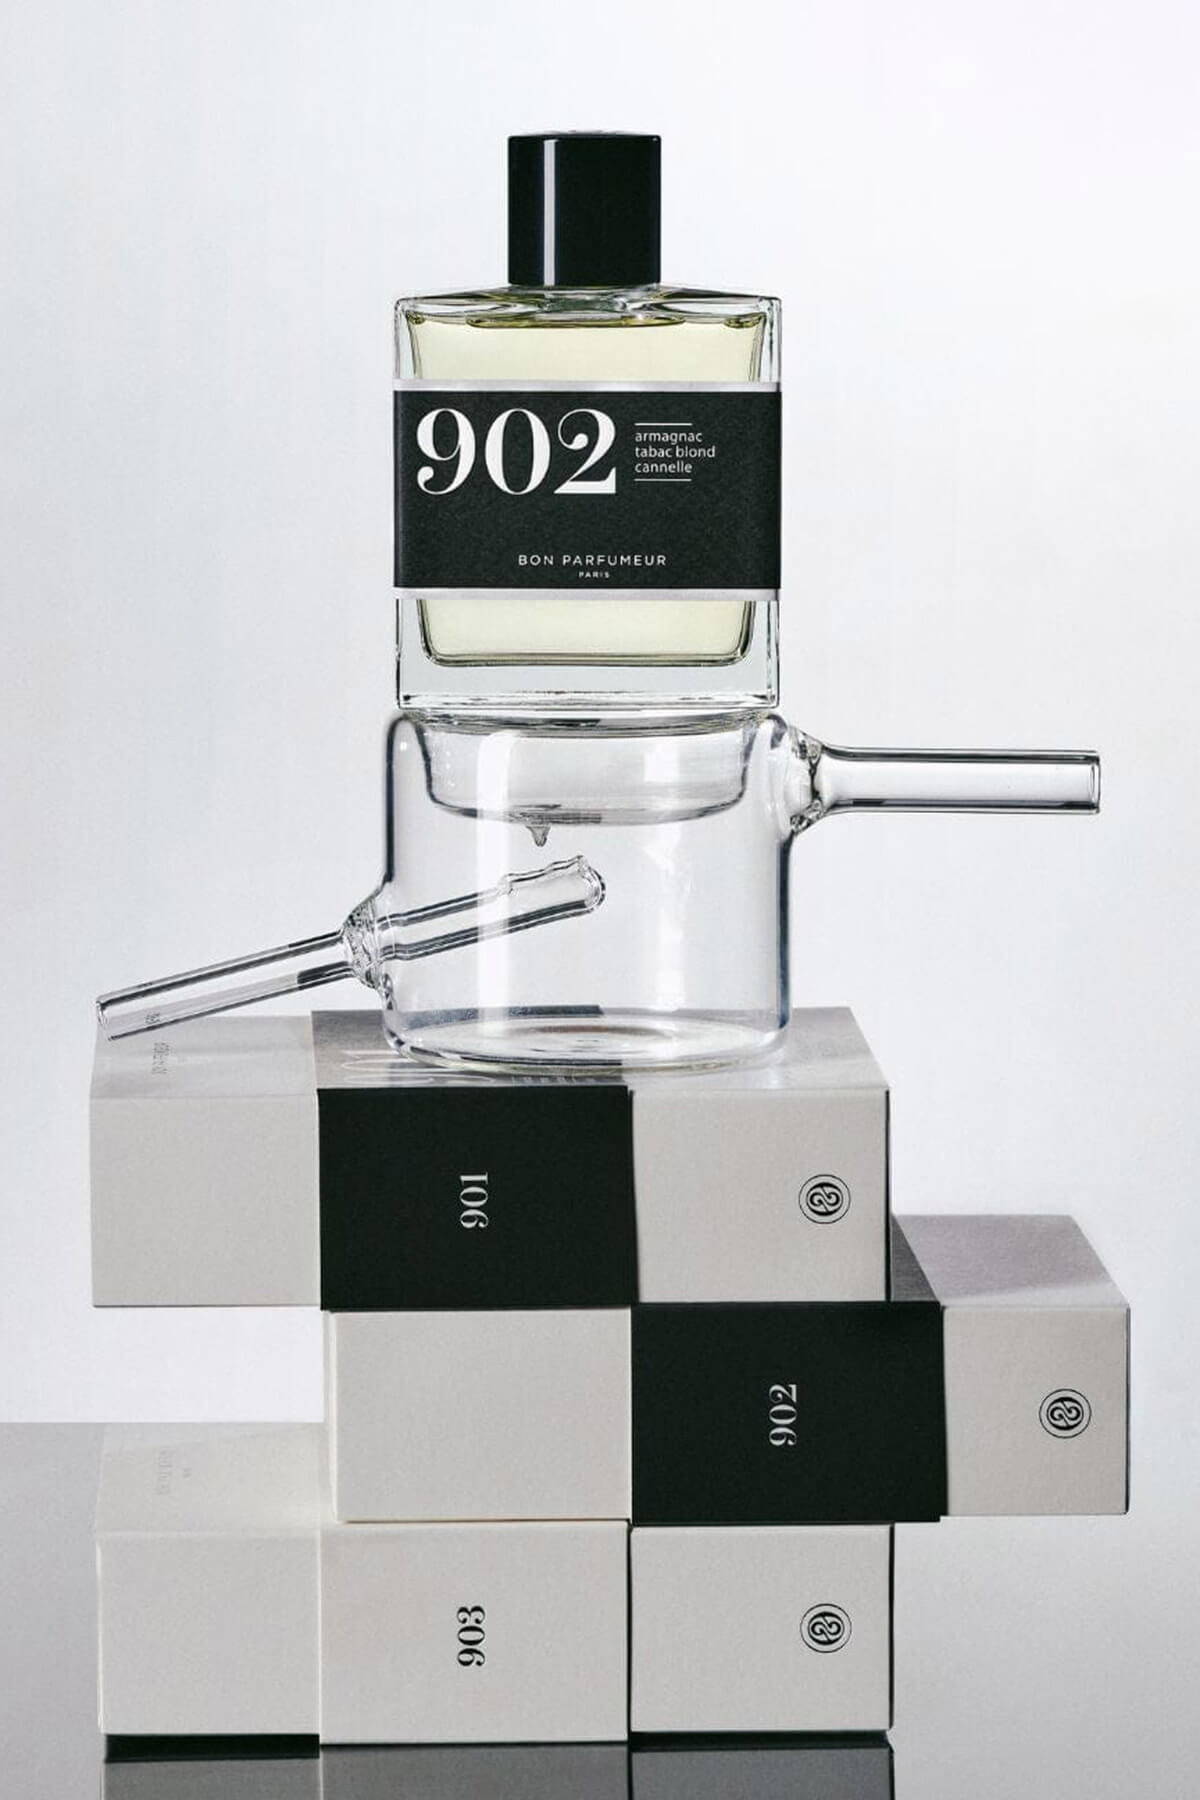 A look book image of the Bon Parfumeur Eau de Parfum 902.